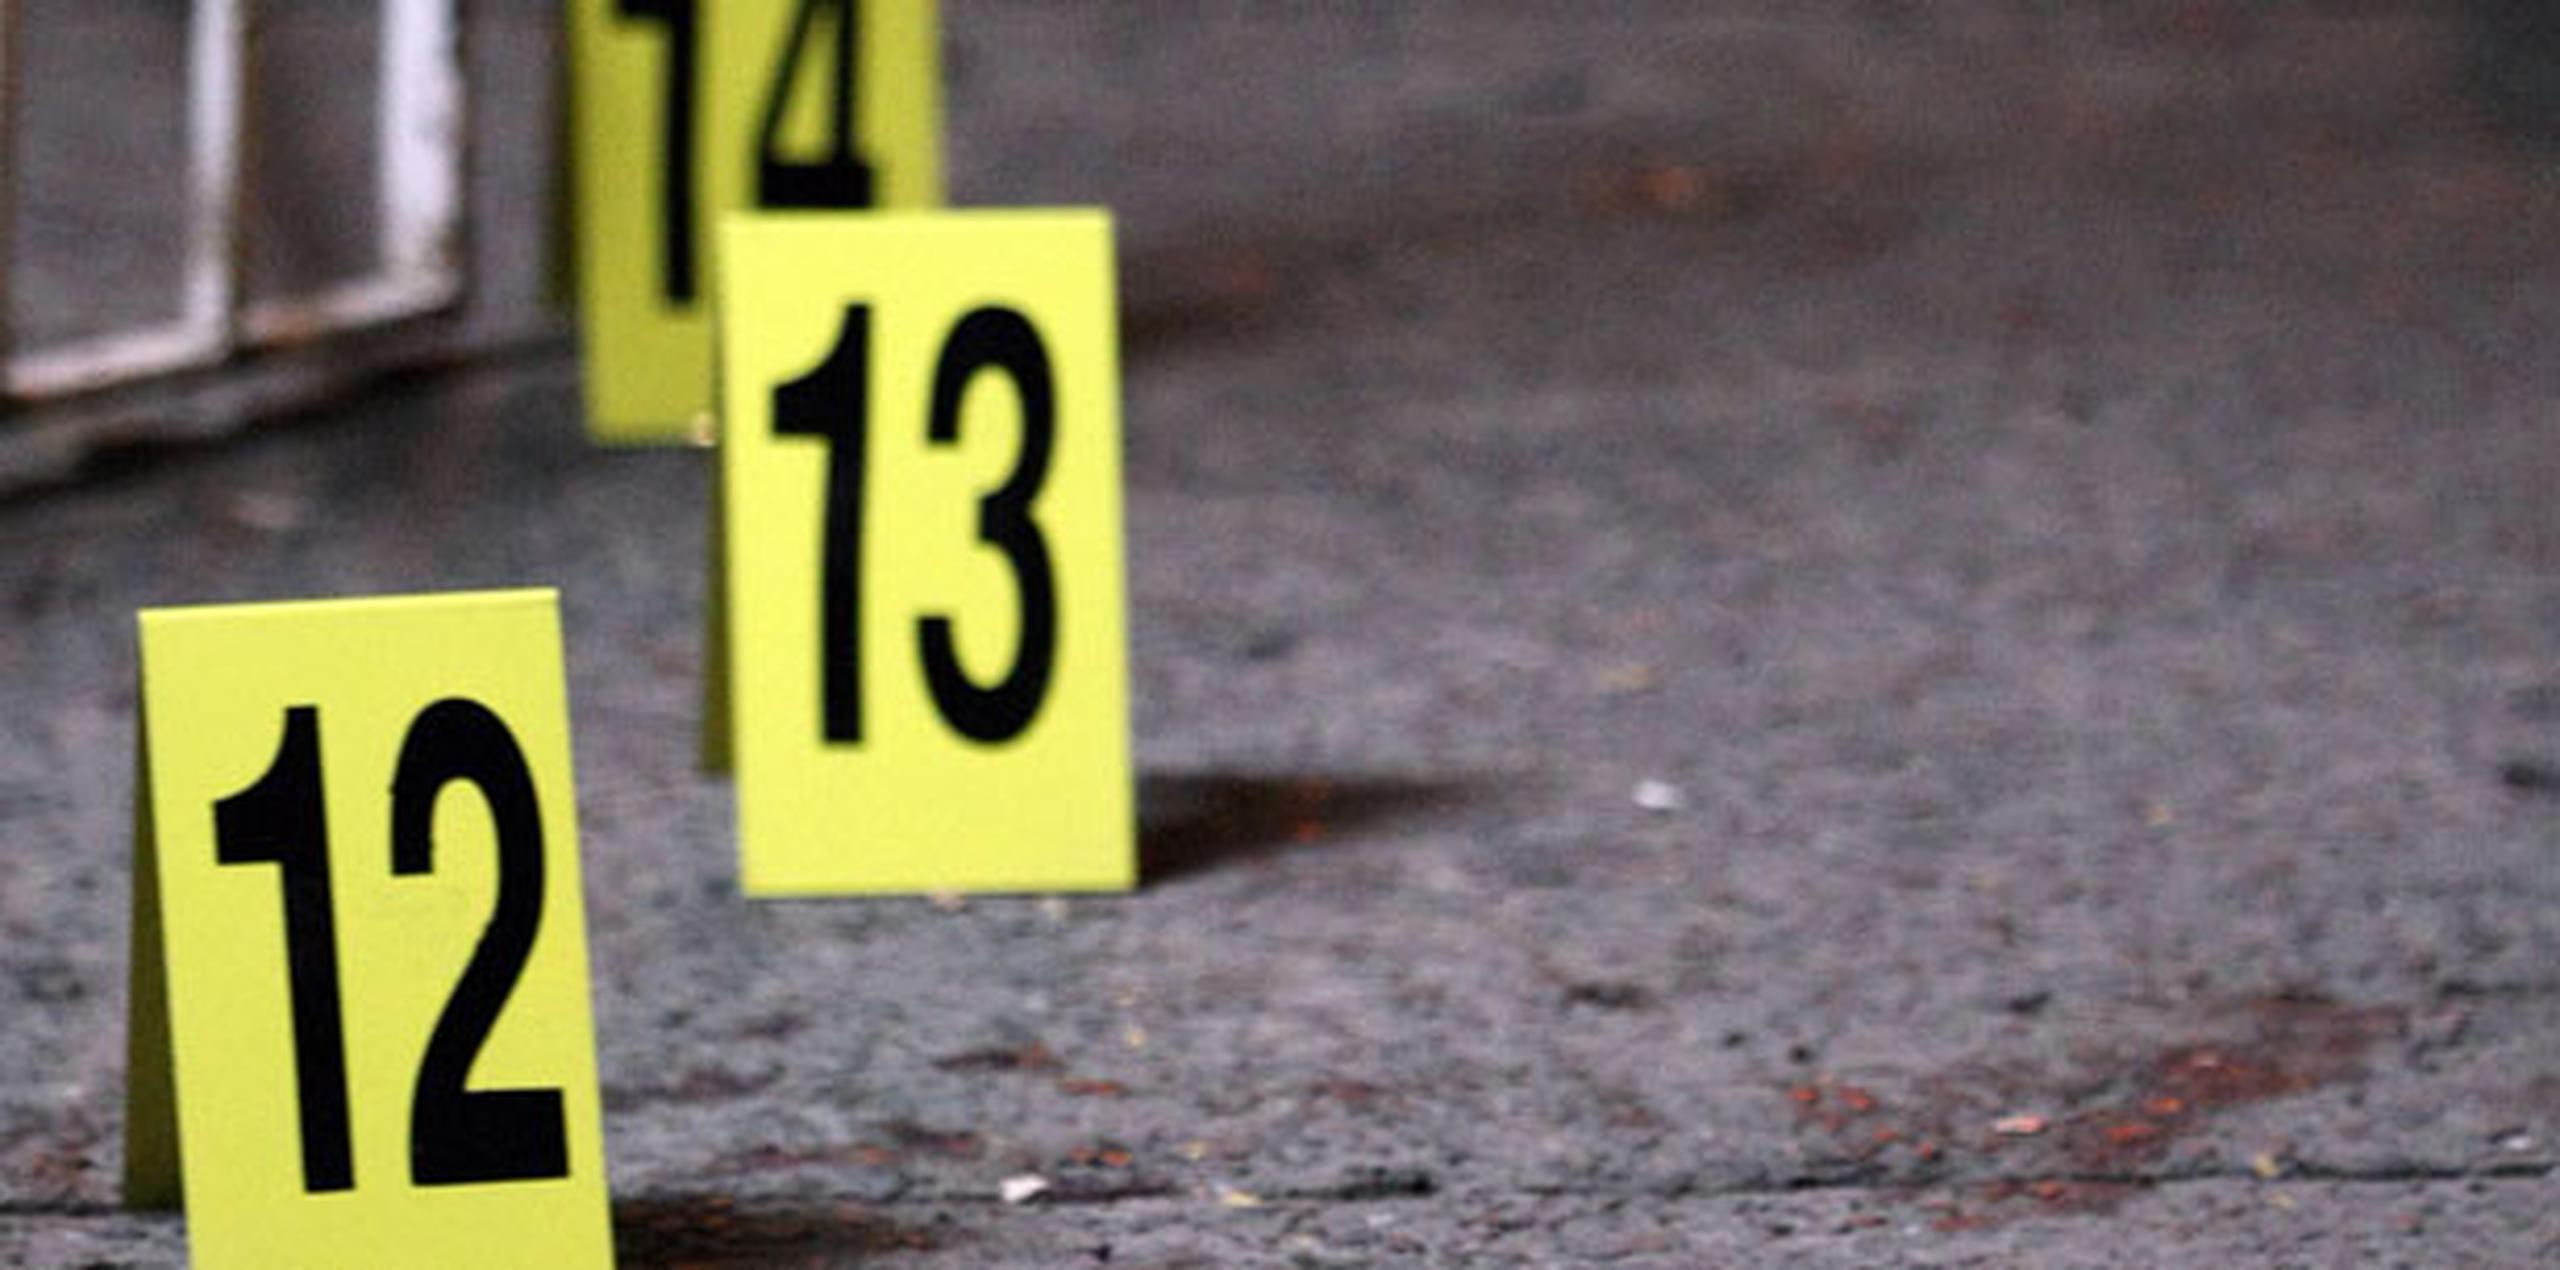 En lo que va de año han ocurrido 183 asesinatos, uno menos que los reportados a esta fecha en el 2016. (Archivo)